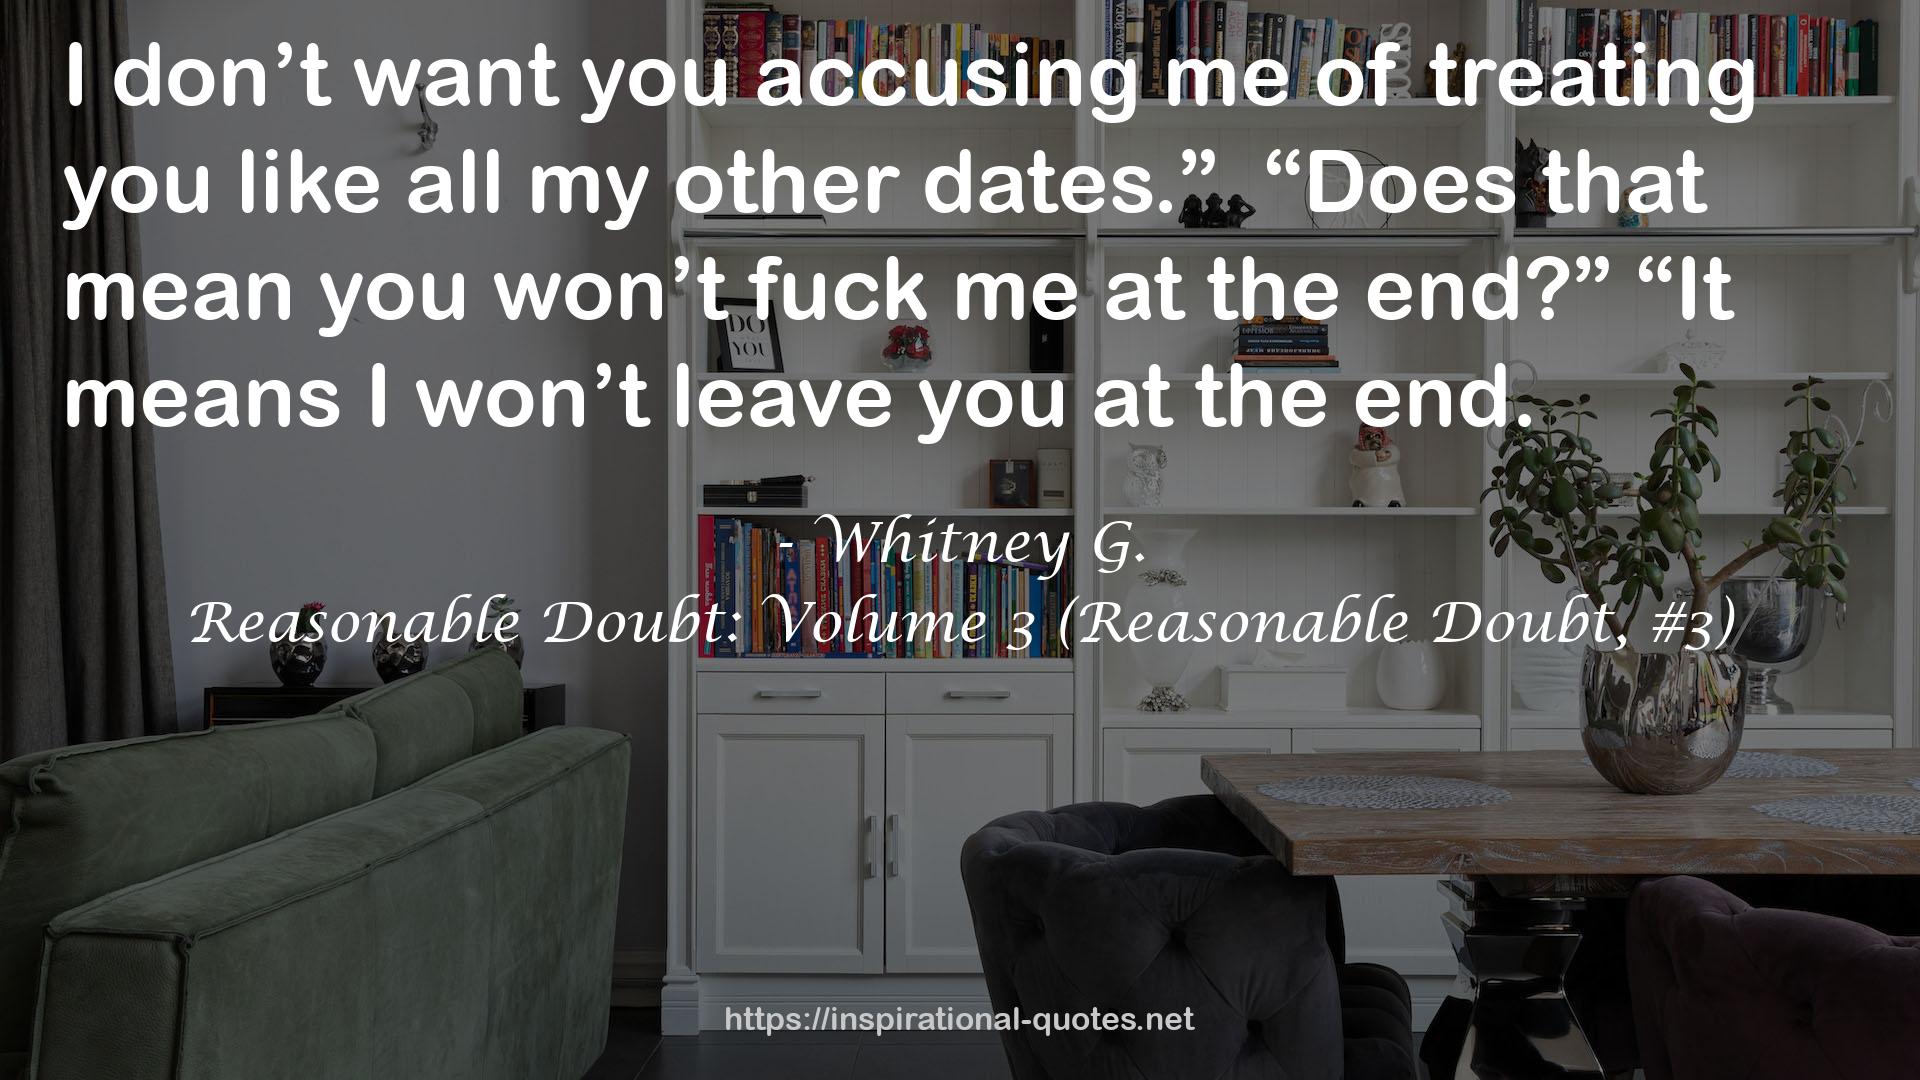 Reasonable Doubt: Volume 3 (Reasonable Doubt, #3) QUOTES